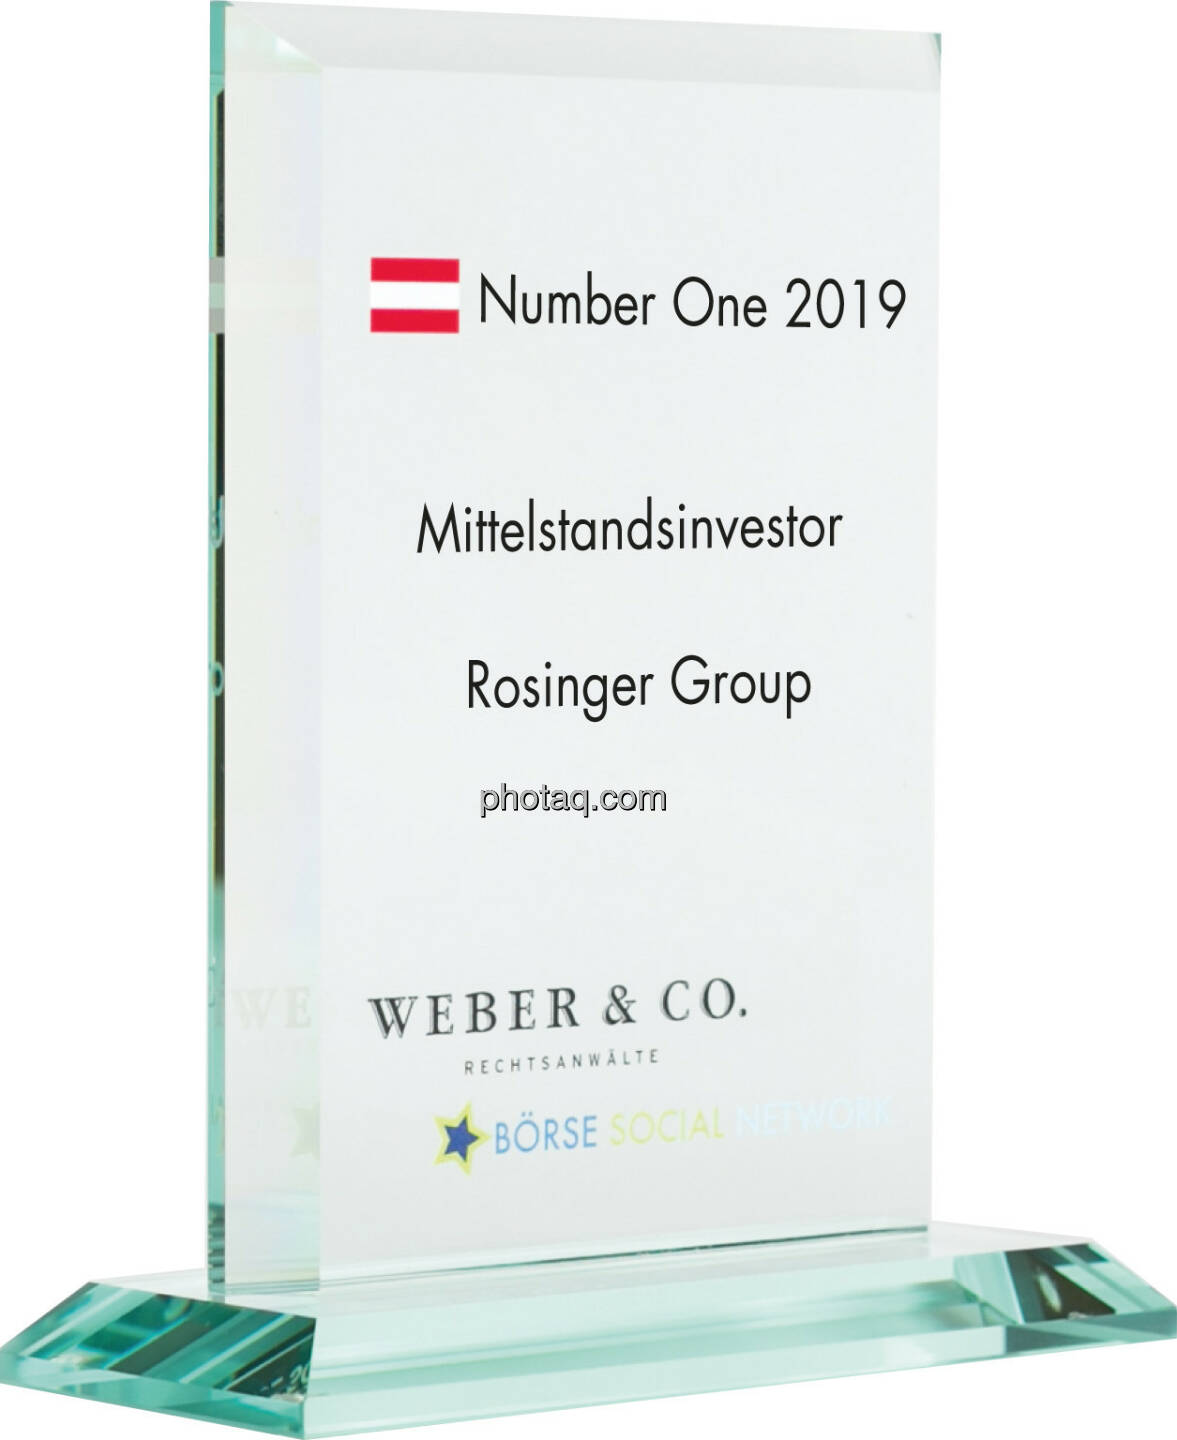 Number One Awards 2019 - Mittelstandsinvestor Rosinger Group